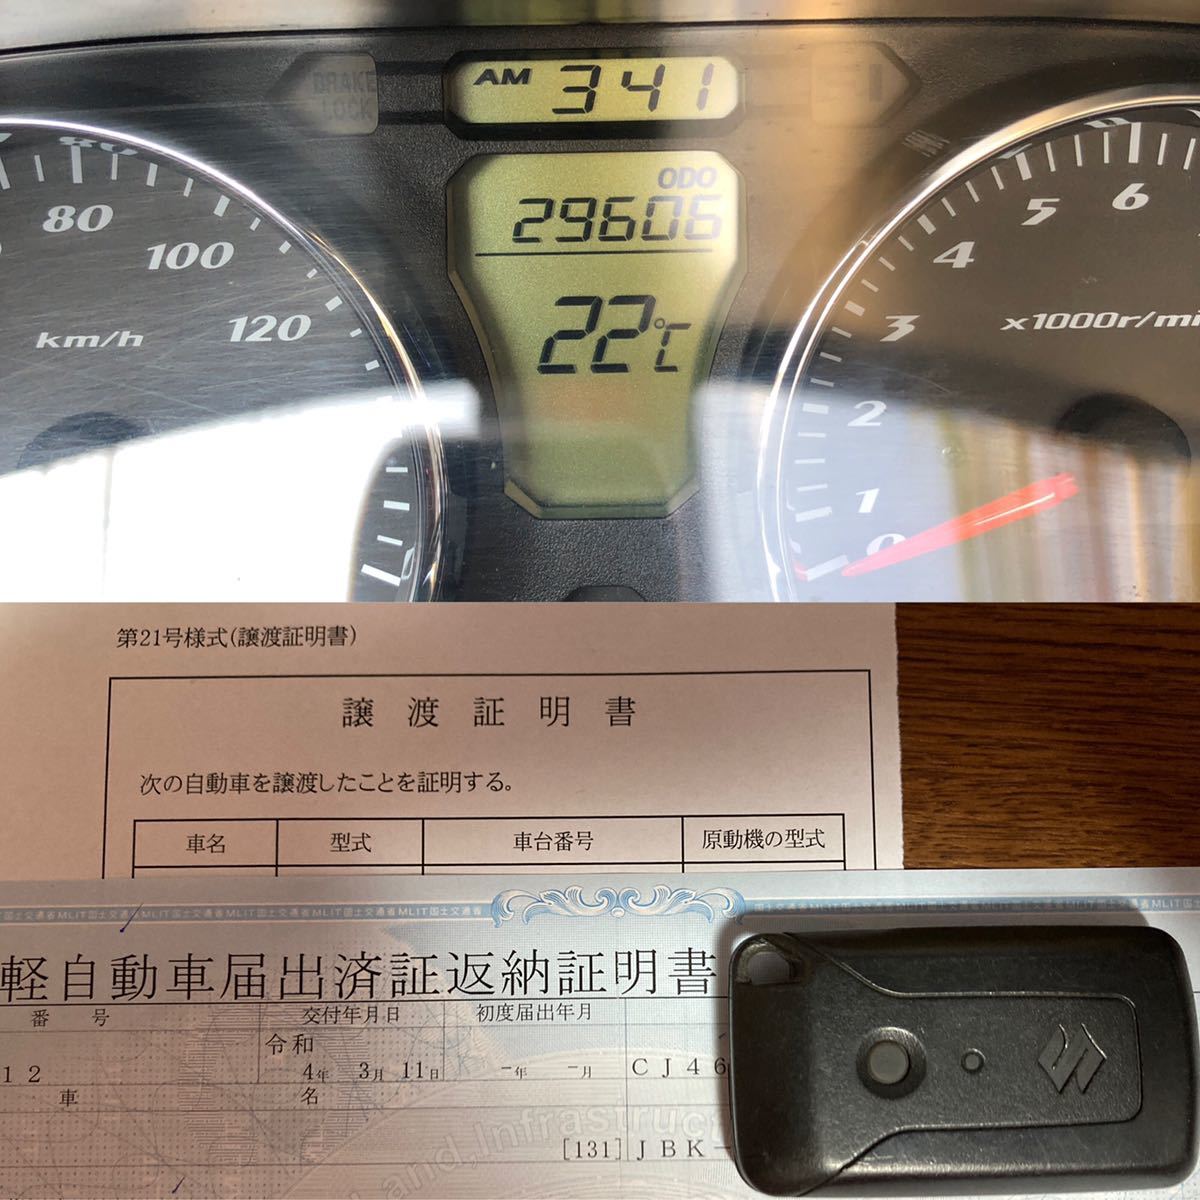 「中古車 SUZUKI スズキCJ46A SKY WAVEスカイウェイブ type S 黒 ブラック 走行距離 29,606km グリップヒーター付 ベルト交換済 (I-LINE予定)」の画像3